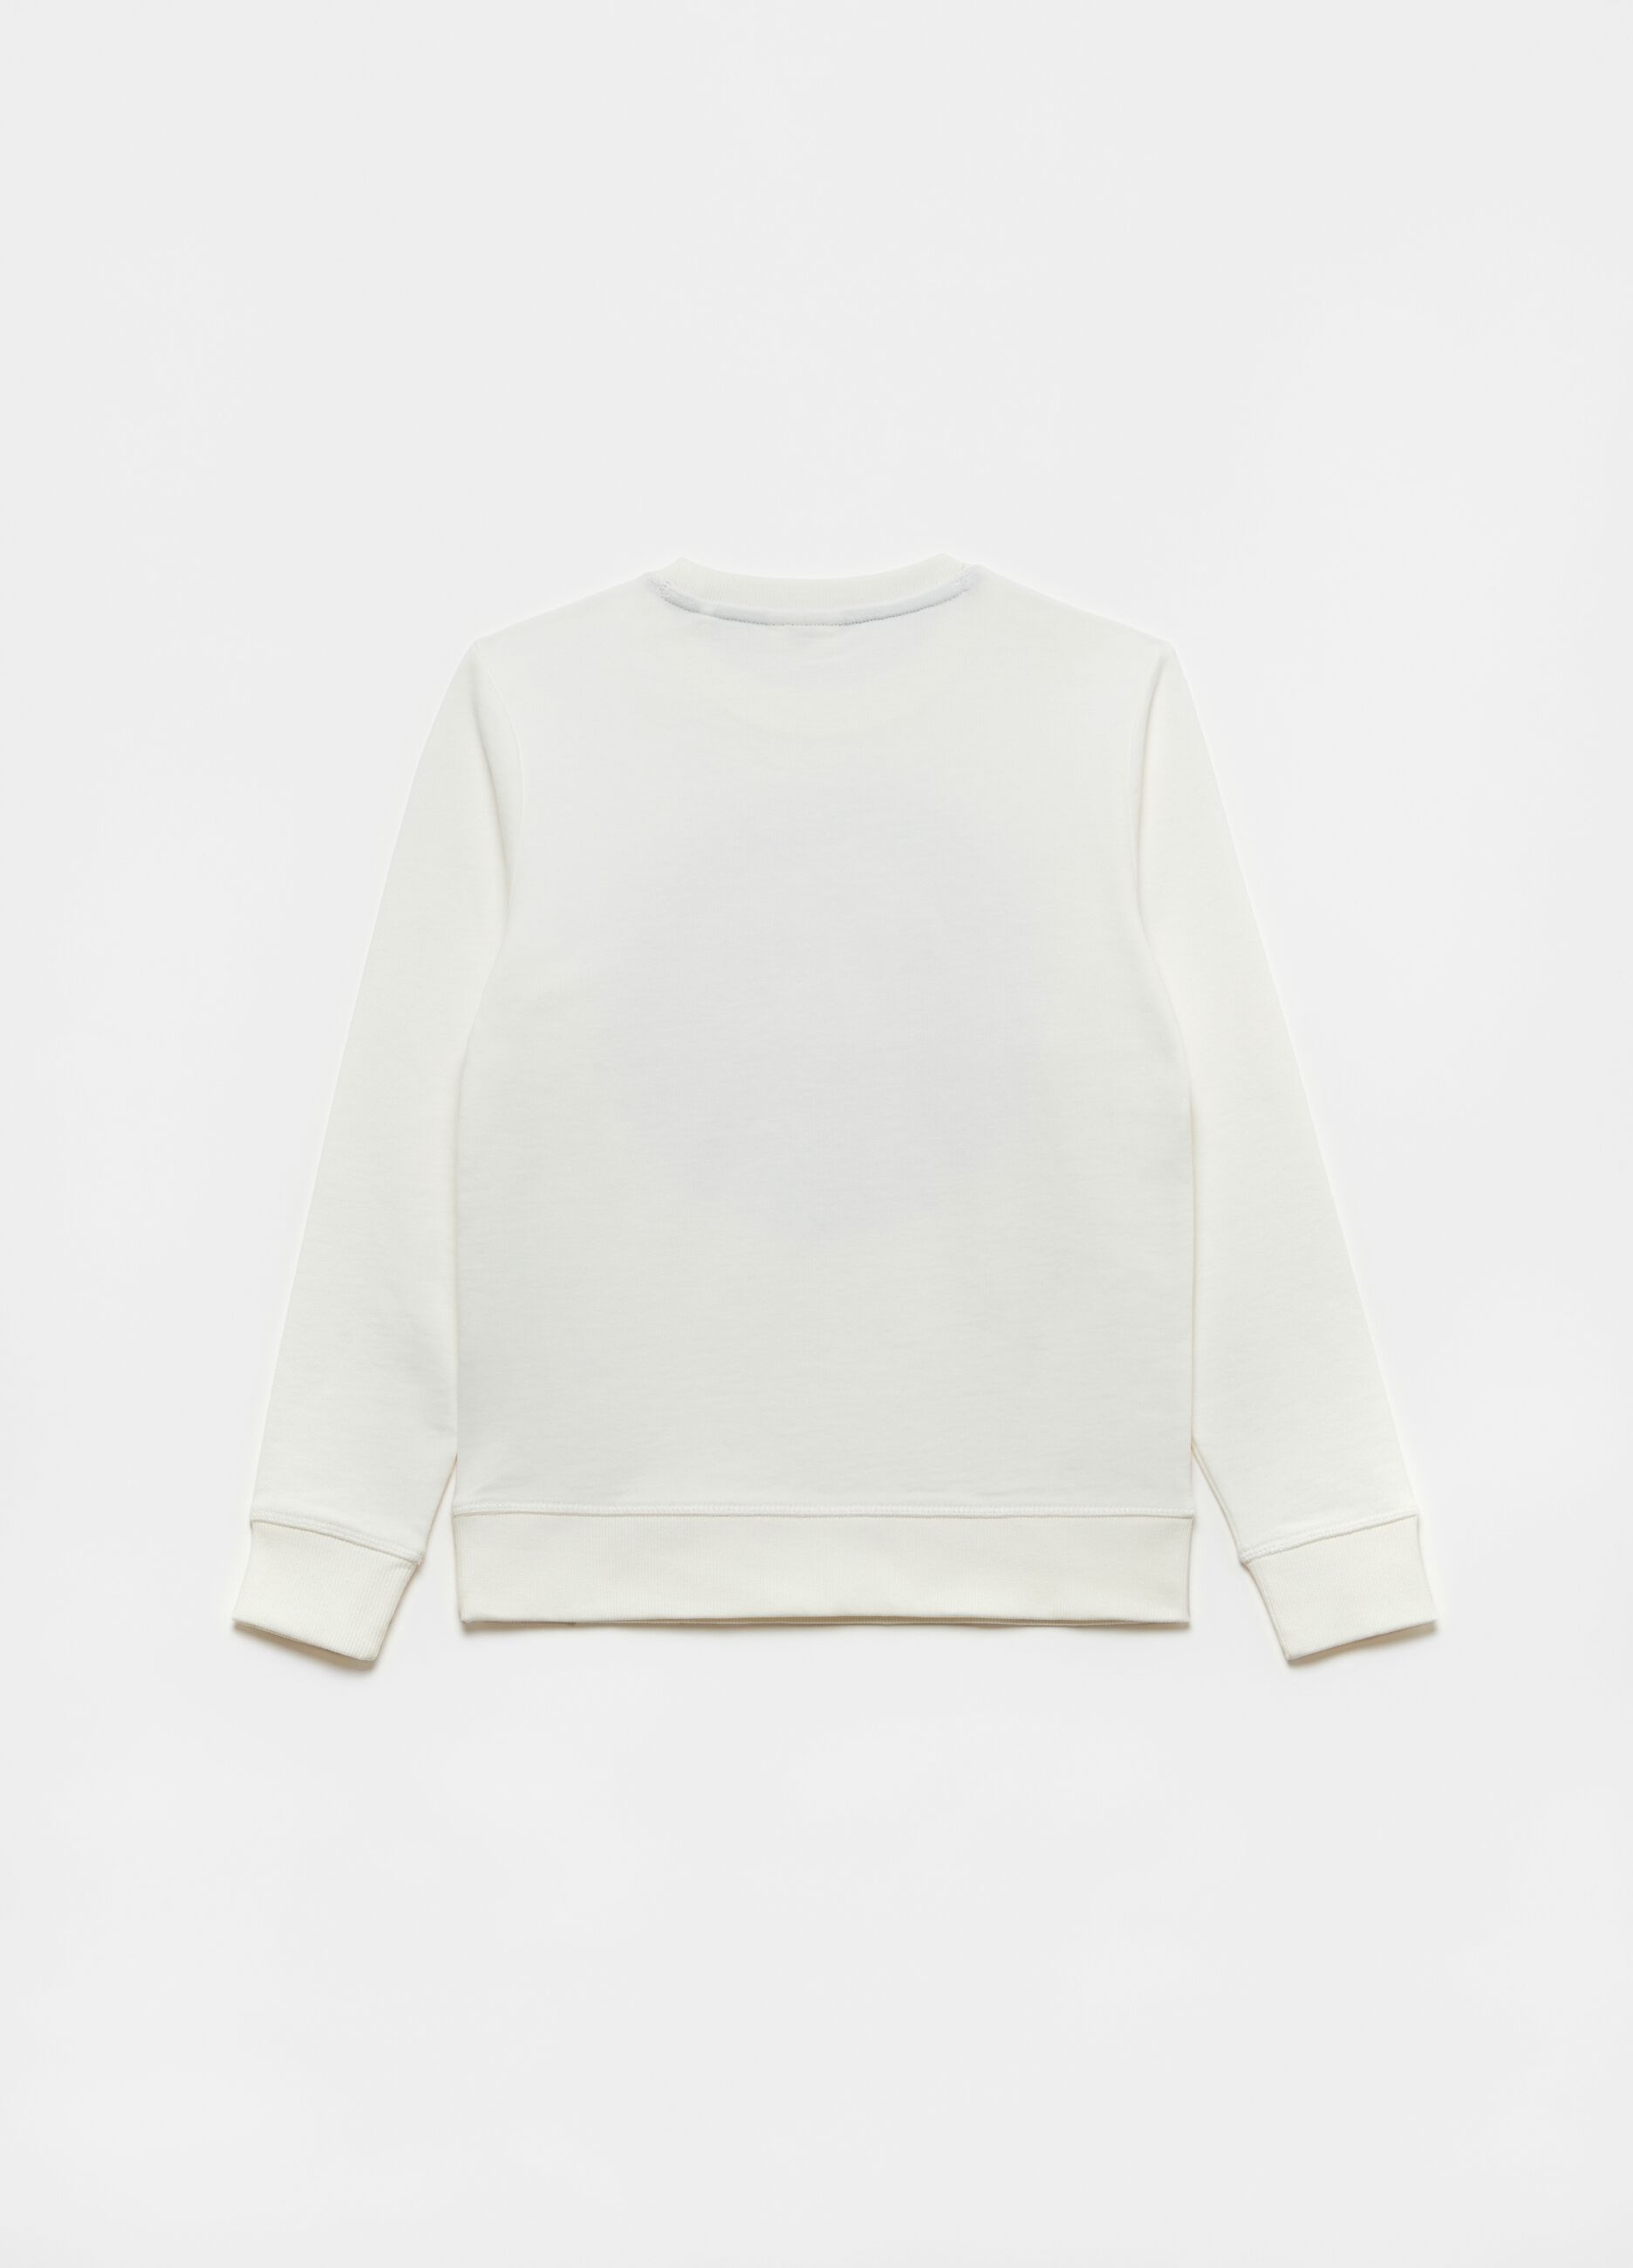 Sweatshirt in 100% cotton with round neck